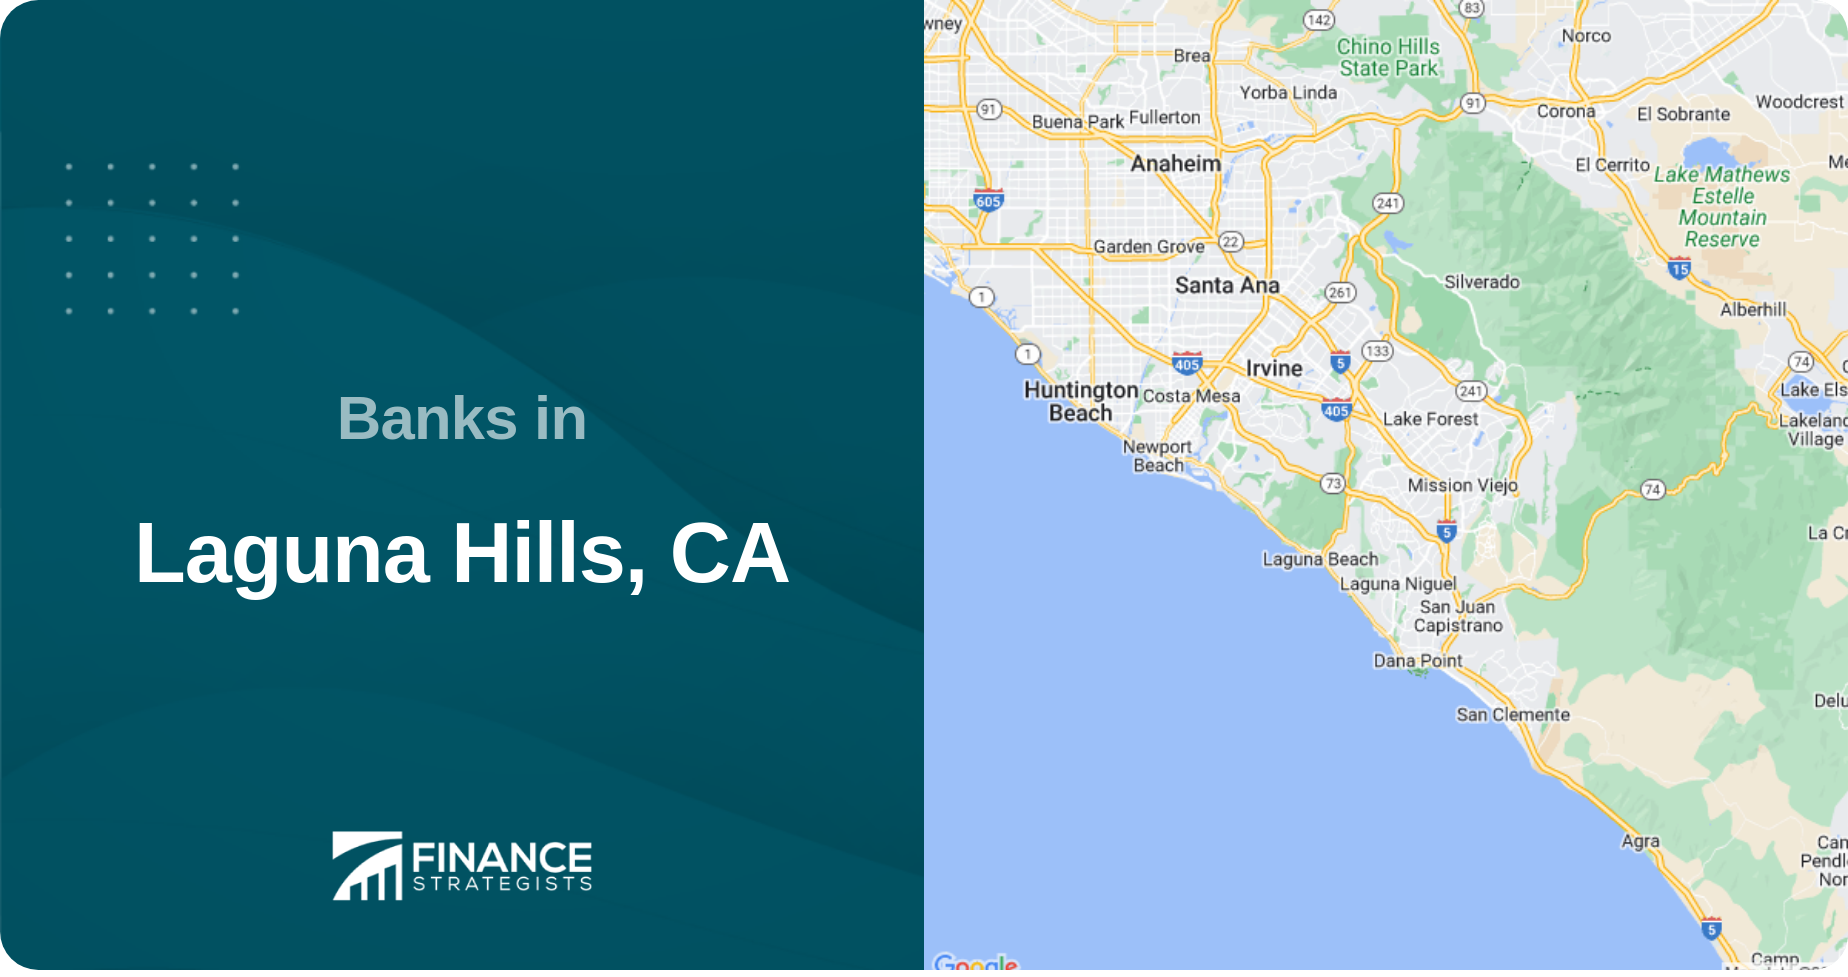 Banks in Laguna Hills, CA